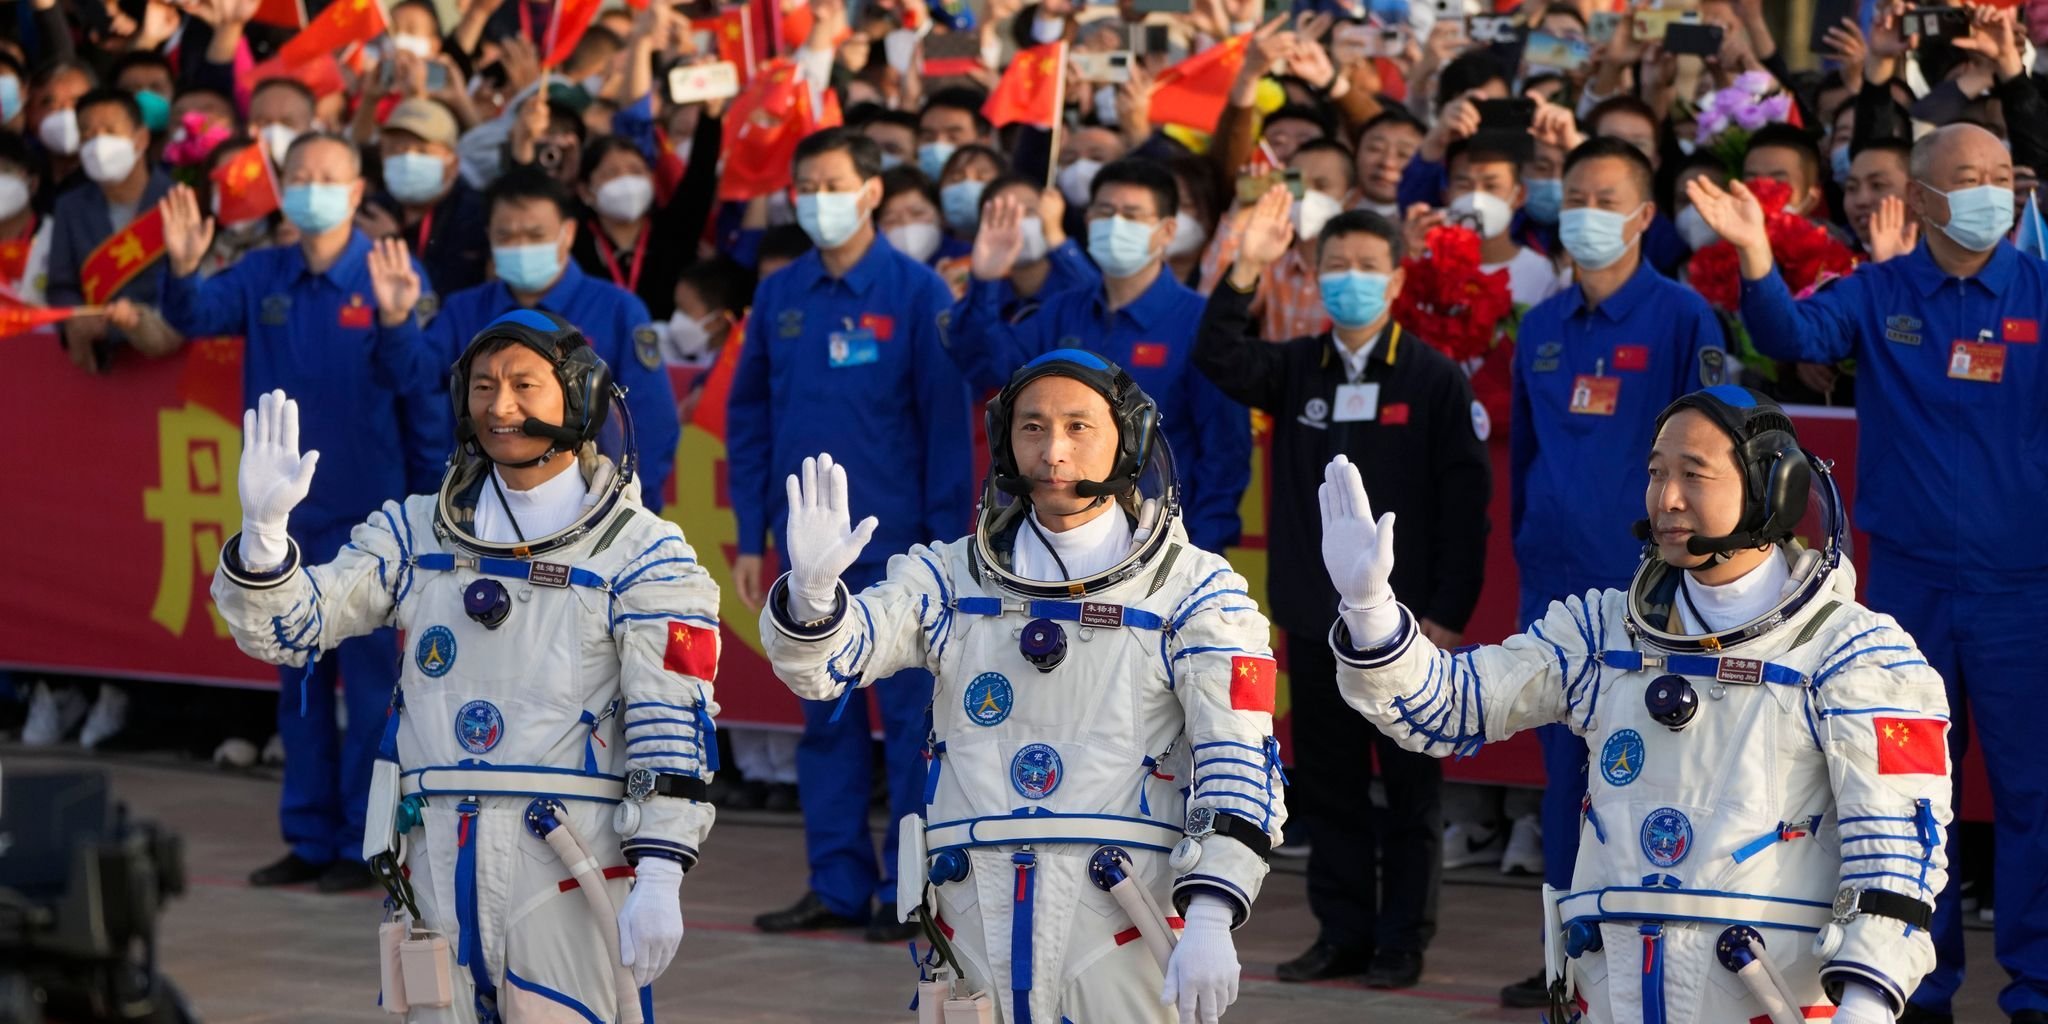 Crewwechsel: China schickt drei Astronauten zu Raumstation